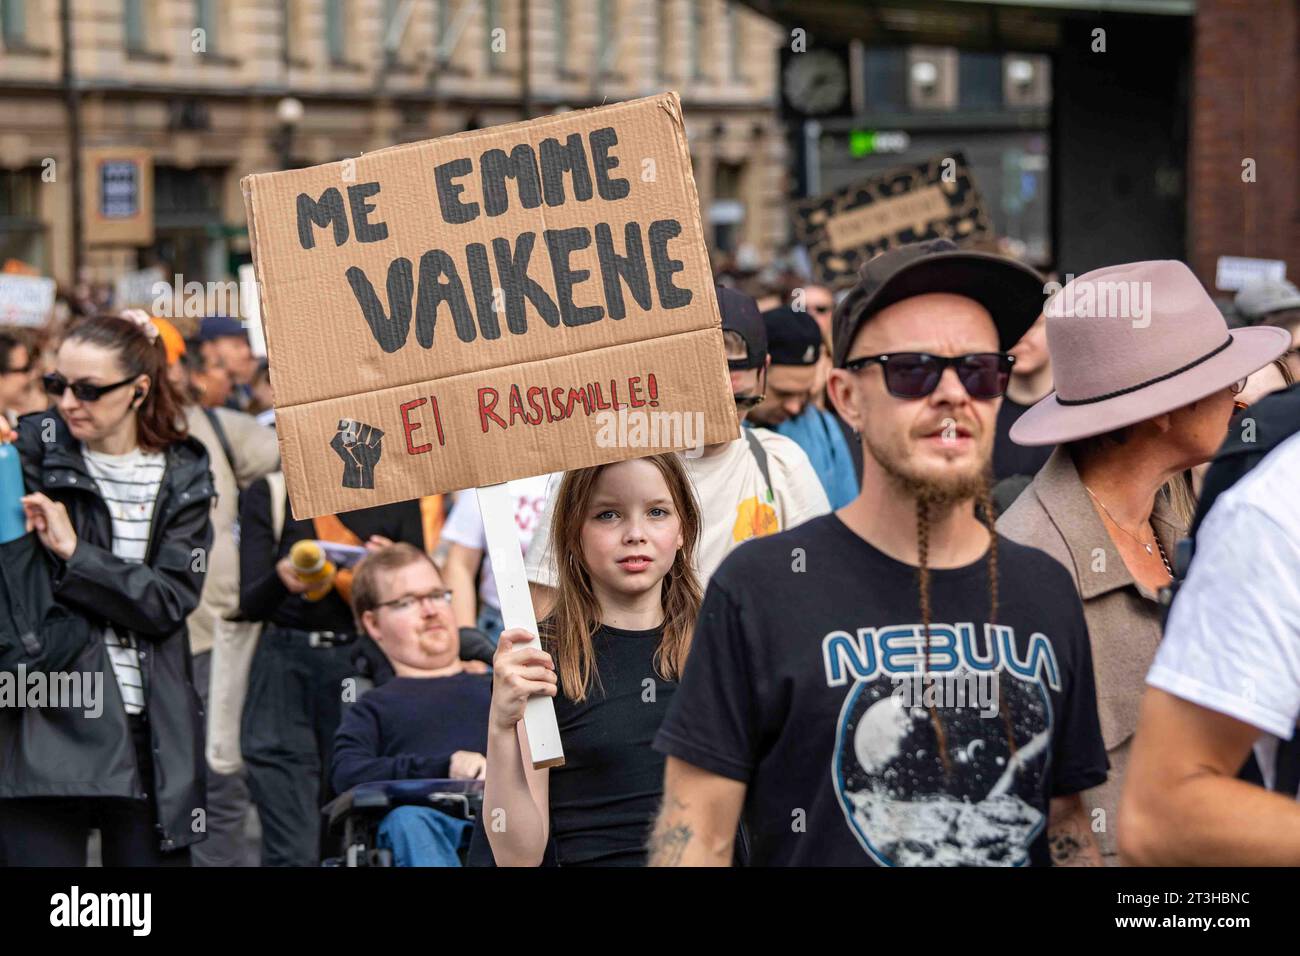 Me emme vaikene. Ei rasismille! Giovane ragazza con un cartello di cartone su Aleksanterinkatu alla manifestazione anti-razzismo a Helsinki, Finlandia. Foto Stock